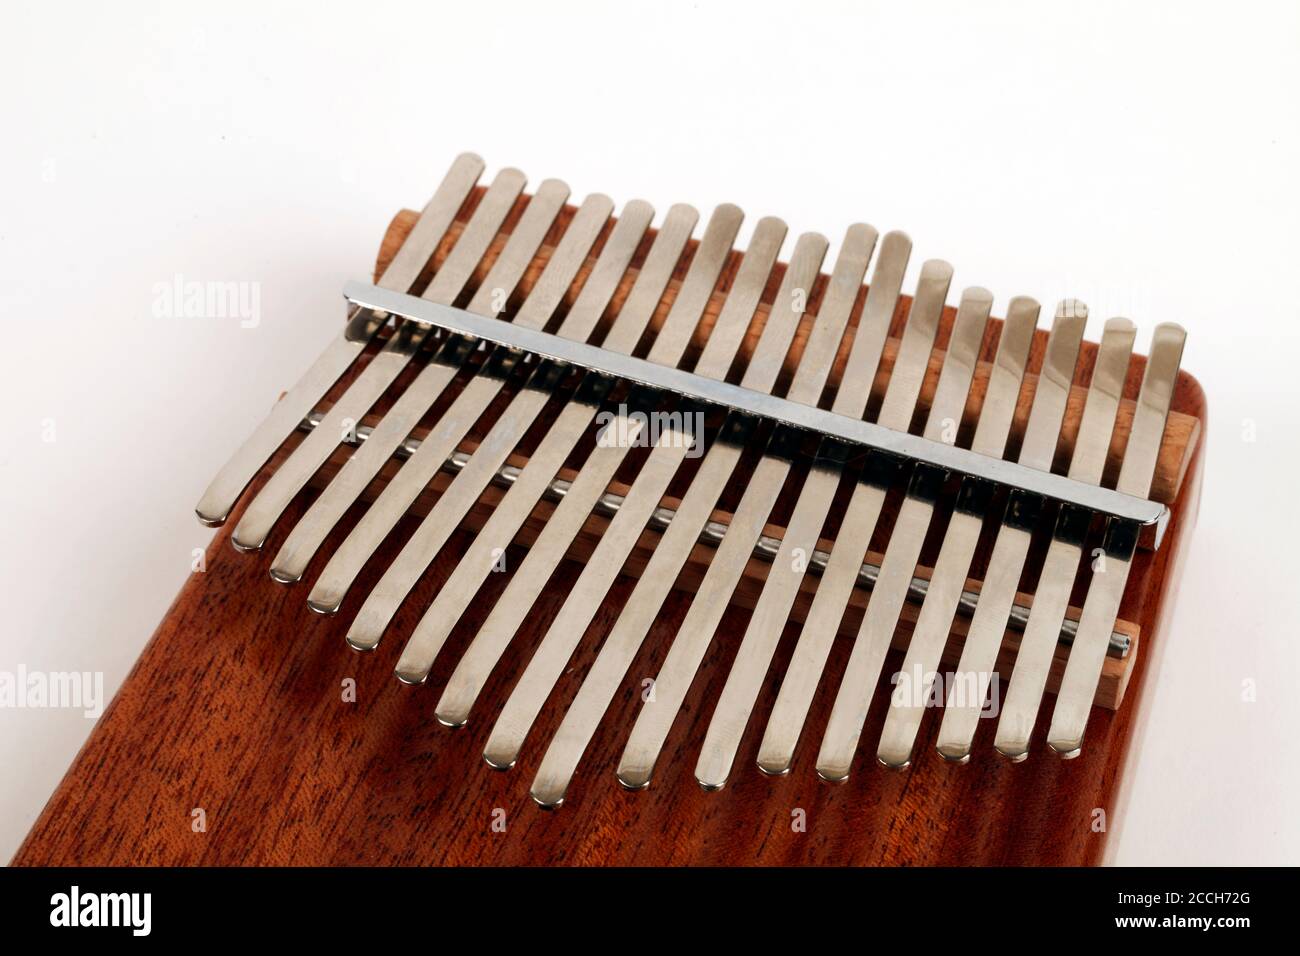 17 note Kalimba dans la clé de C. Thumb piano, boîtier de son, résonateur. Fabriqué par Atlas. Complet avec une prise femelle électronique et un pick-up. Banque D'Images